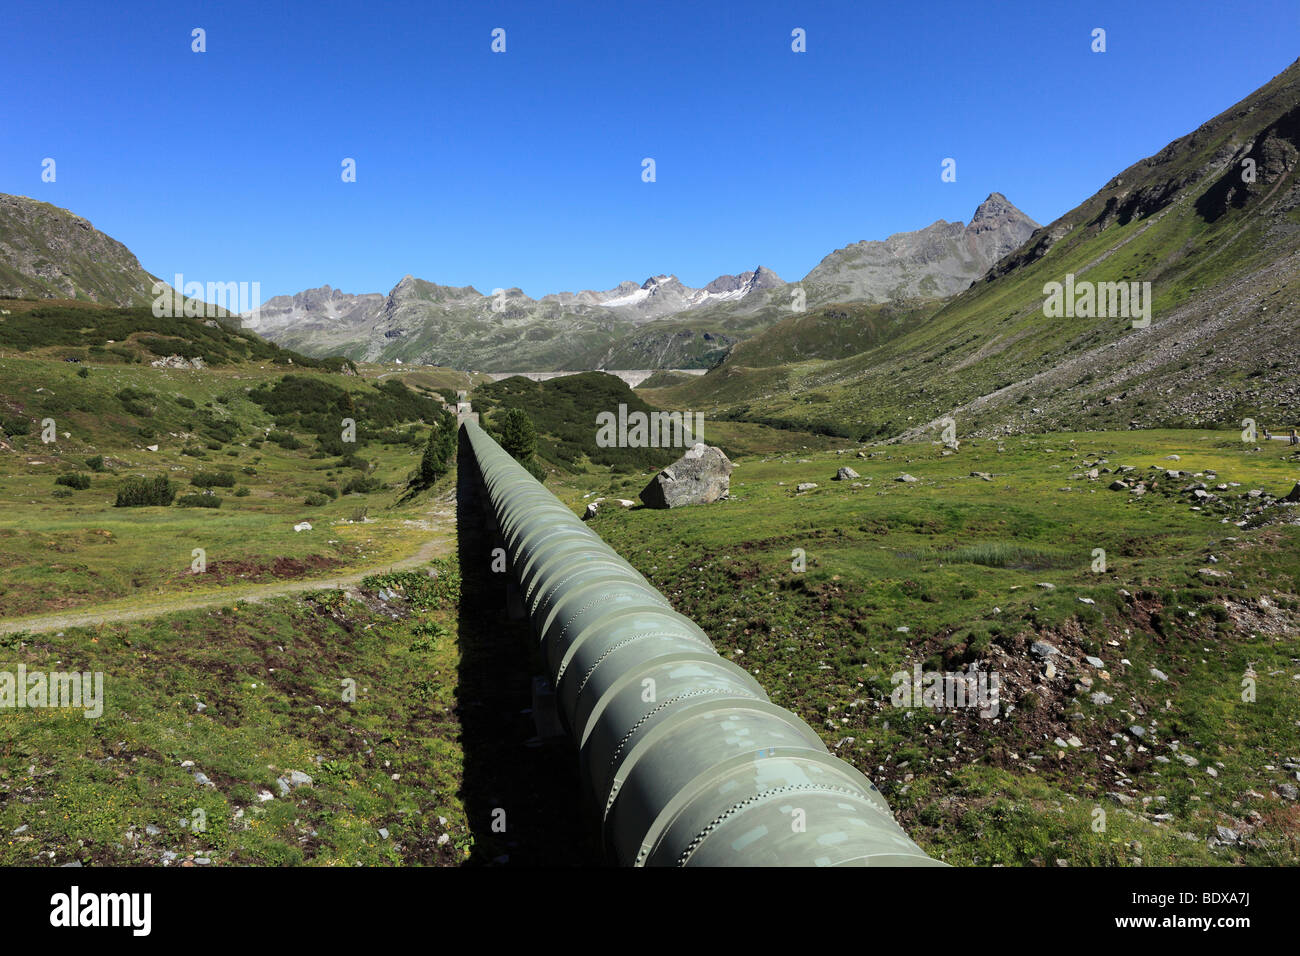 Et l'eau du barrage du lac de pipeline, Silvretta, Grossvermunt Bielerhoehe, Montafon Silvretta, Groupe, Vorarlberg, Autriche, Europe Banque D'Images